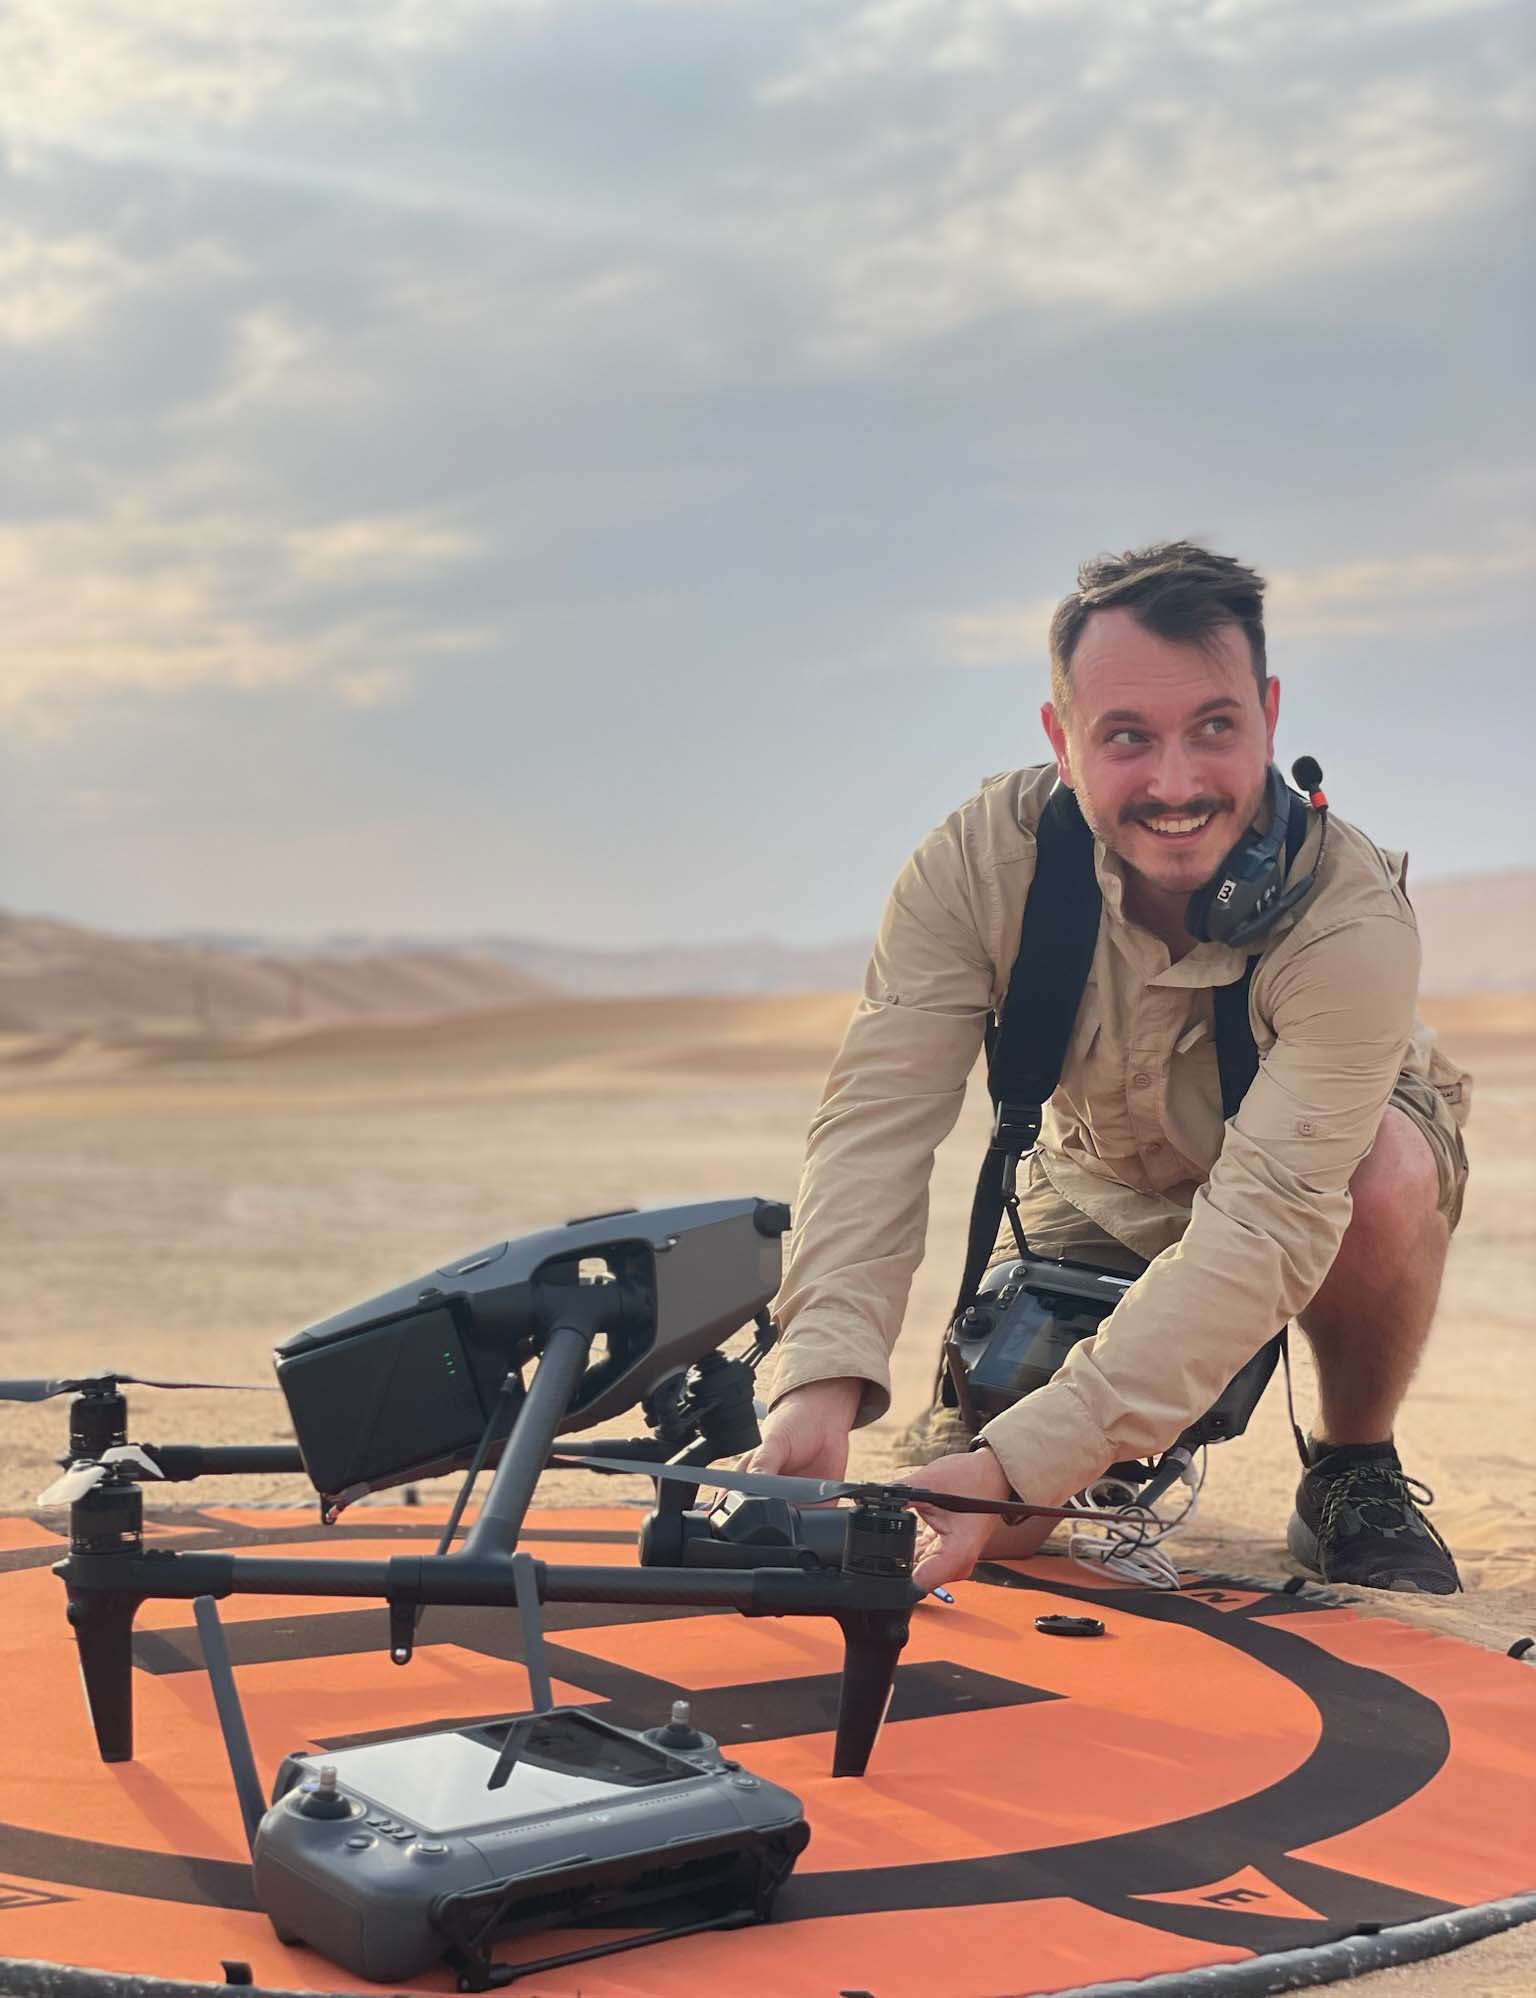  Operador de drones en posesión del DJI Inspire 3, famoso por sus impresionantes imágenes aéreas en 8k y preferido por cineastas de todo el mundo. 